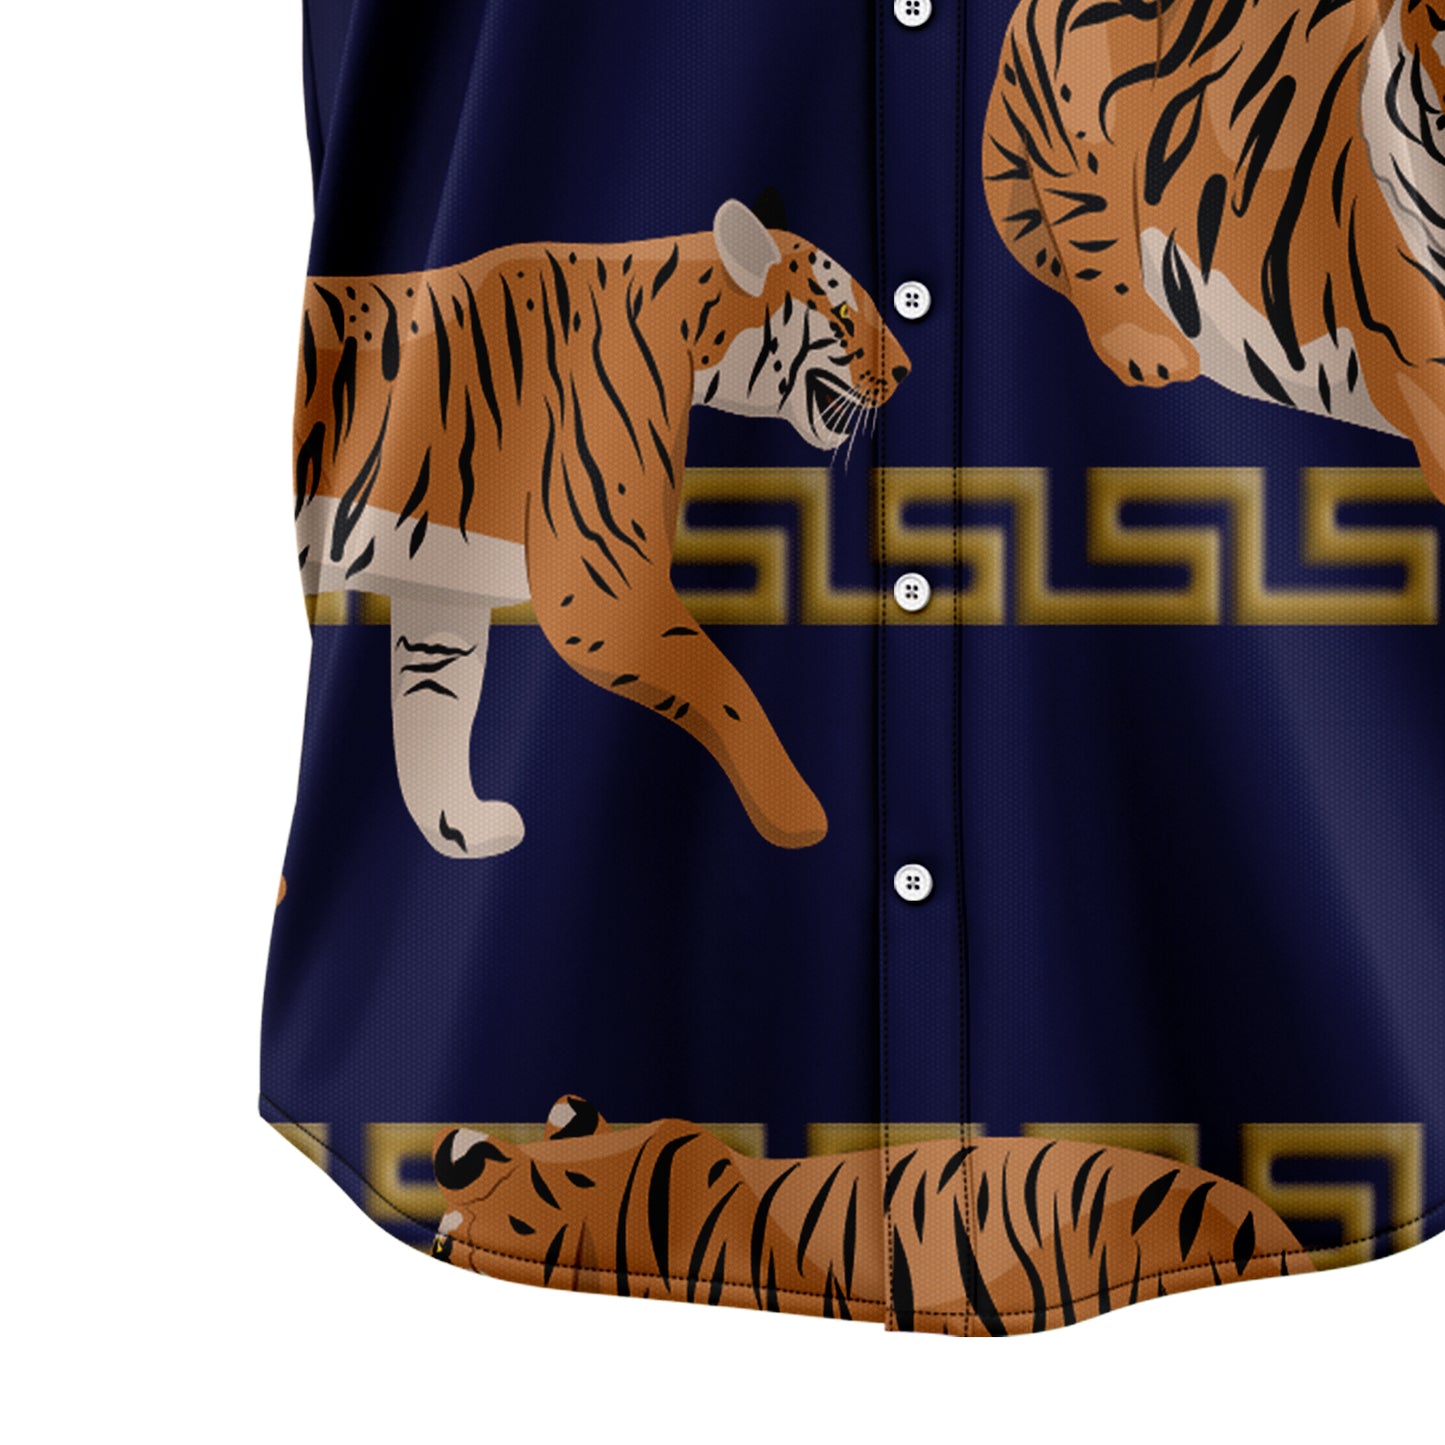 Awesome Tiger G5713 Hawaiian Shirt